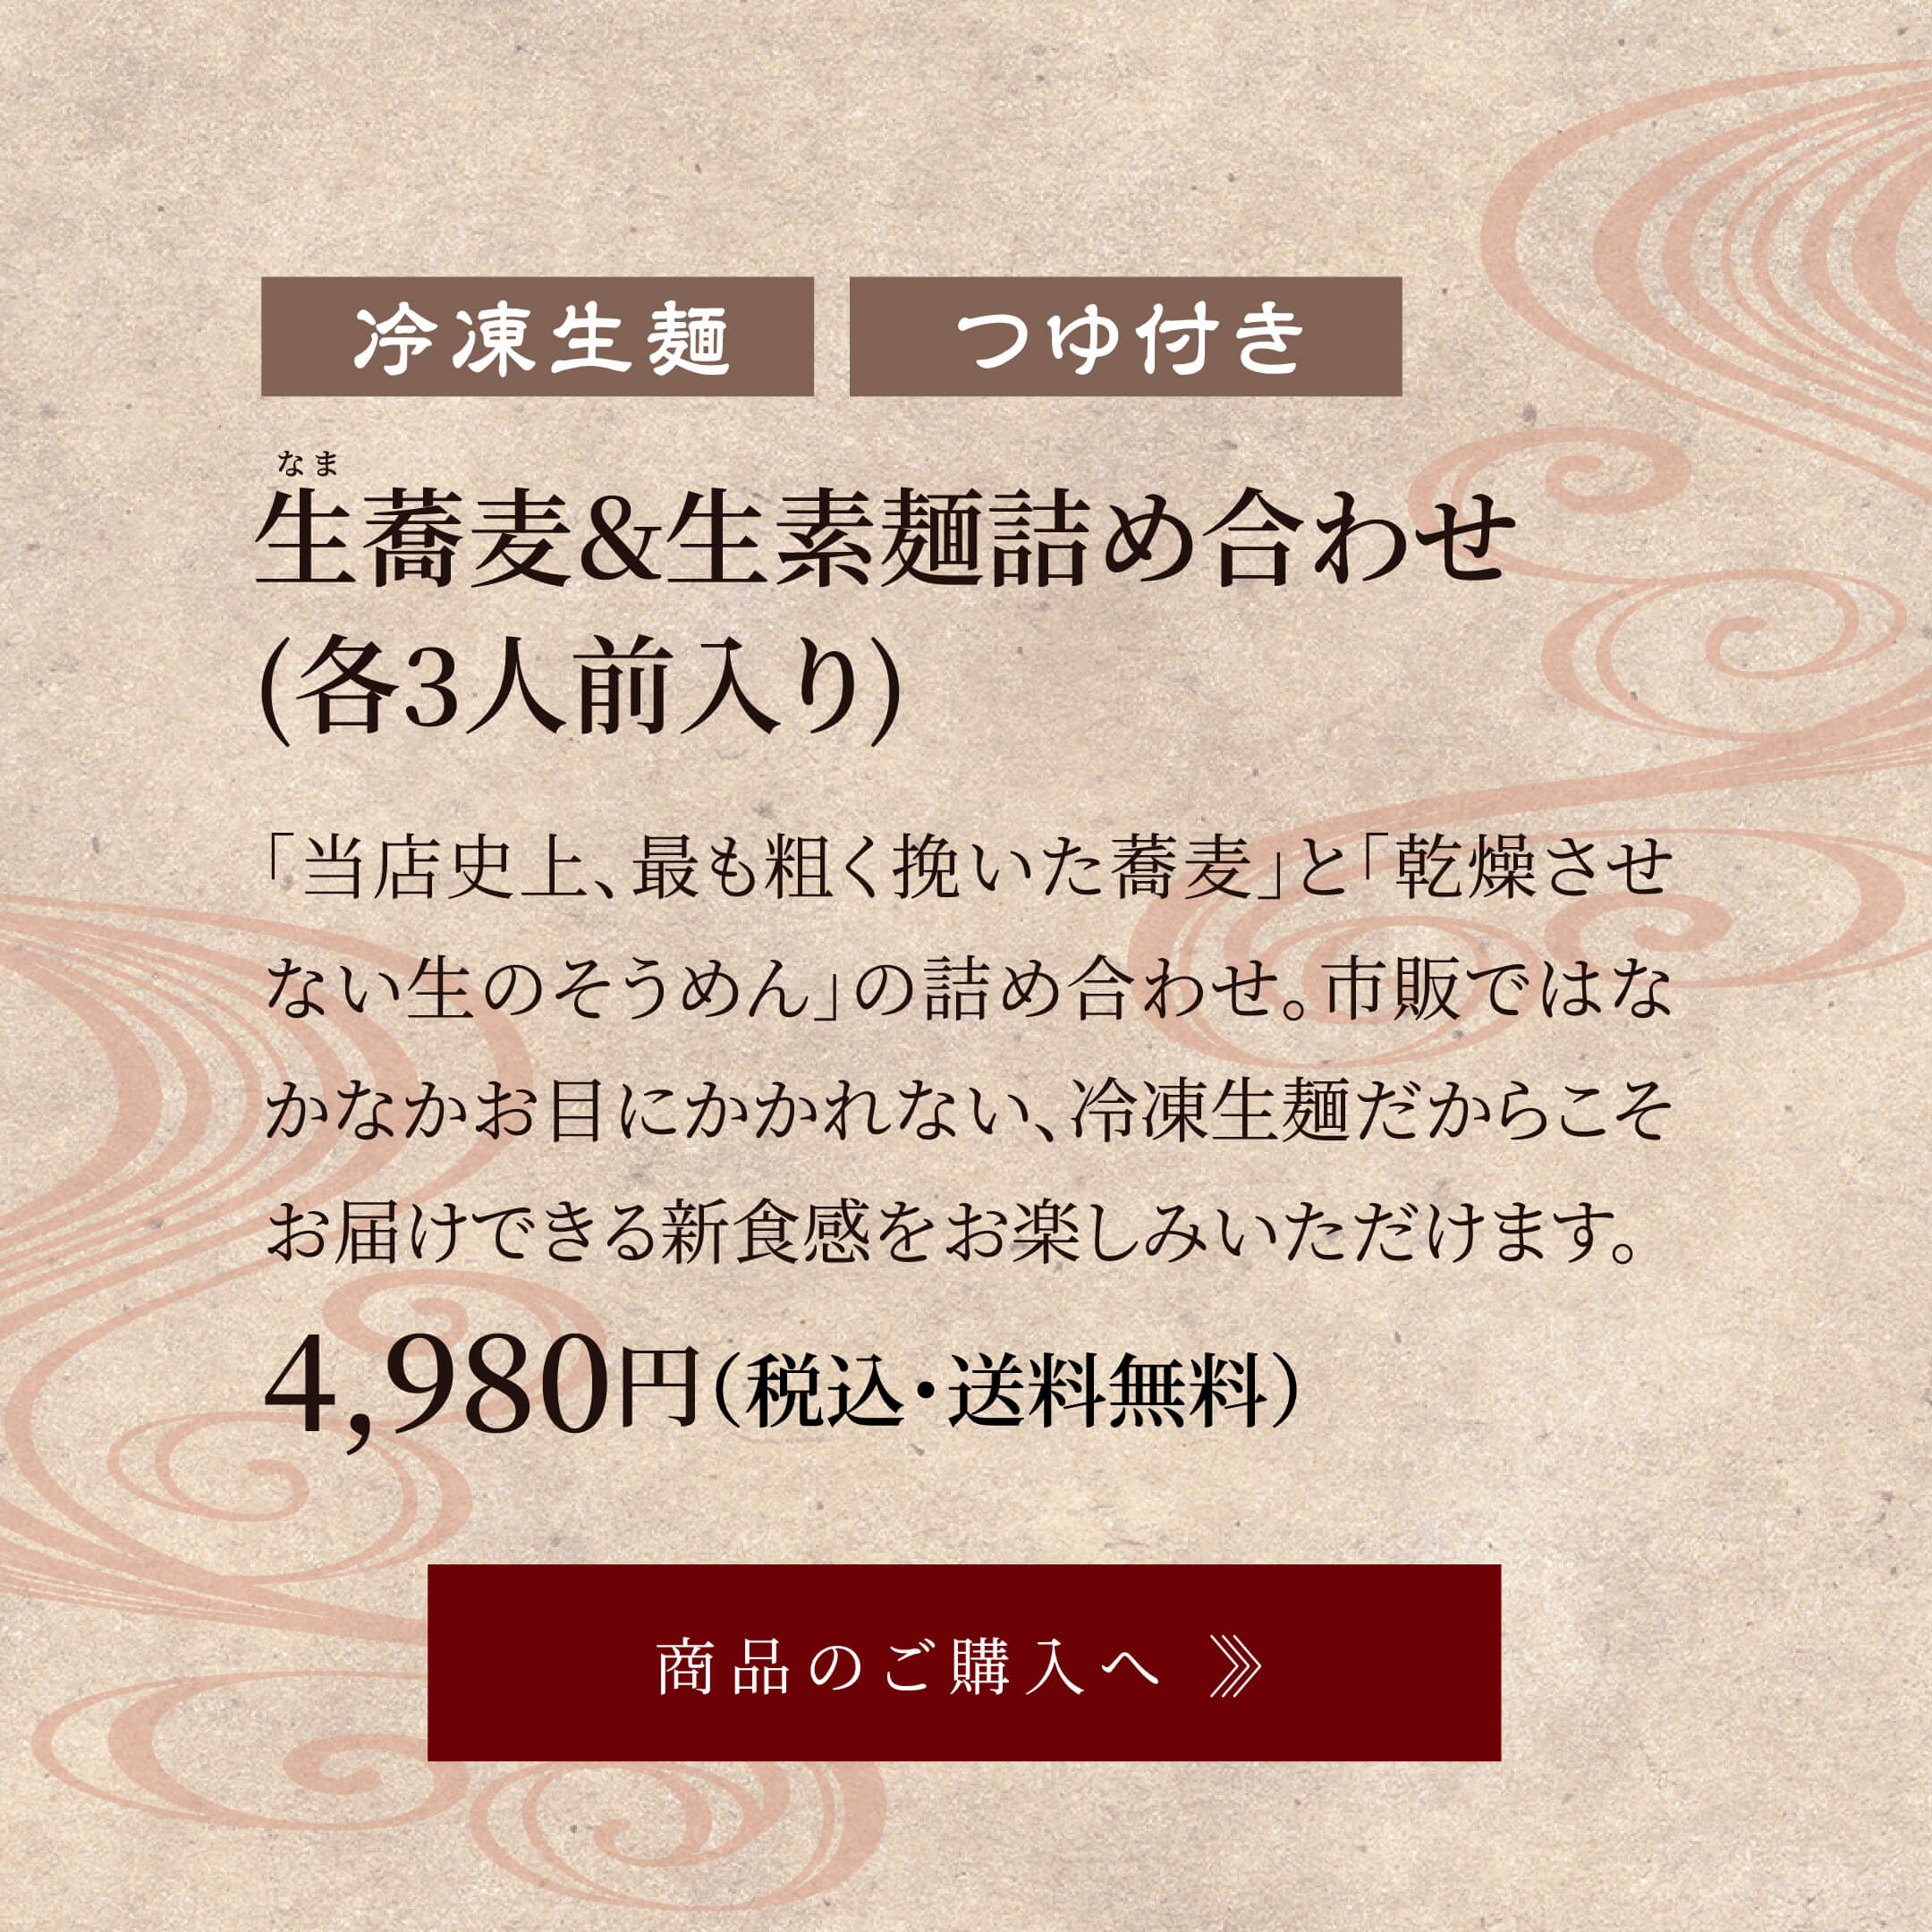 生蕎麦&生素麺詰め合わせ(各3人前入り) 4,980円円(税込・送料無料)